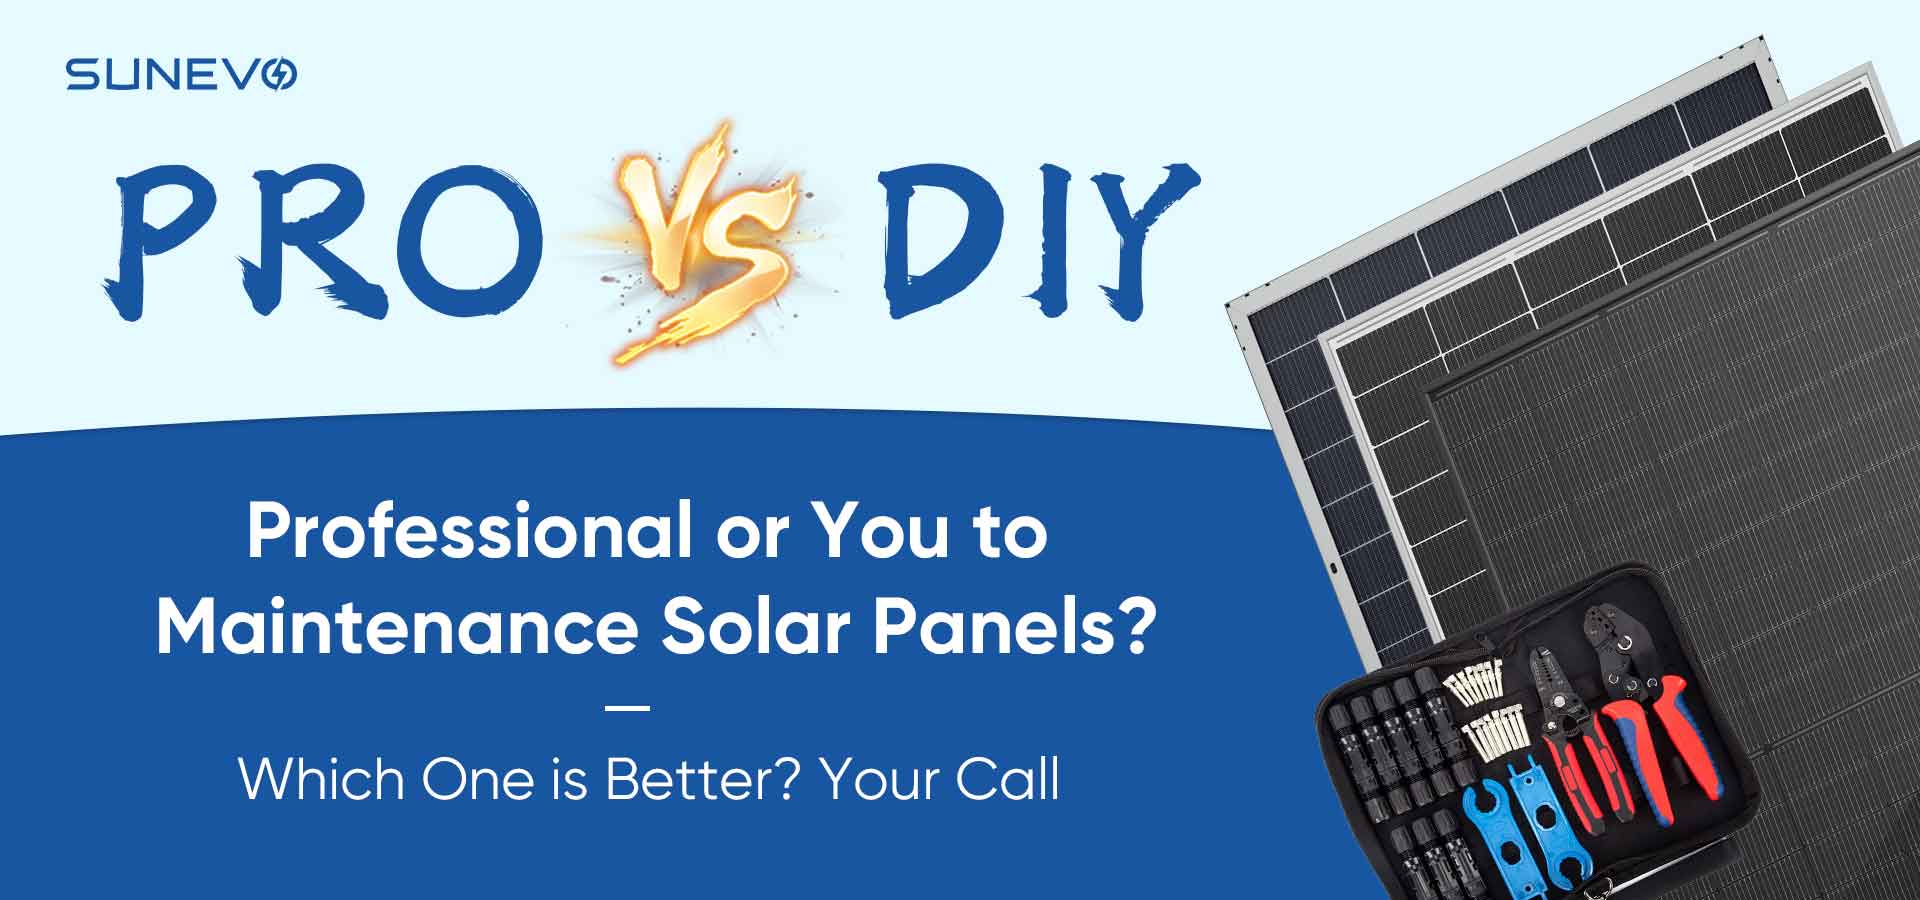 Die Debatte: Professionelle Solarwartung vs. DIY-Pflege